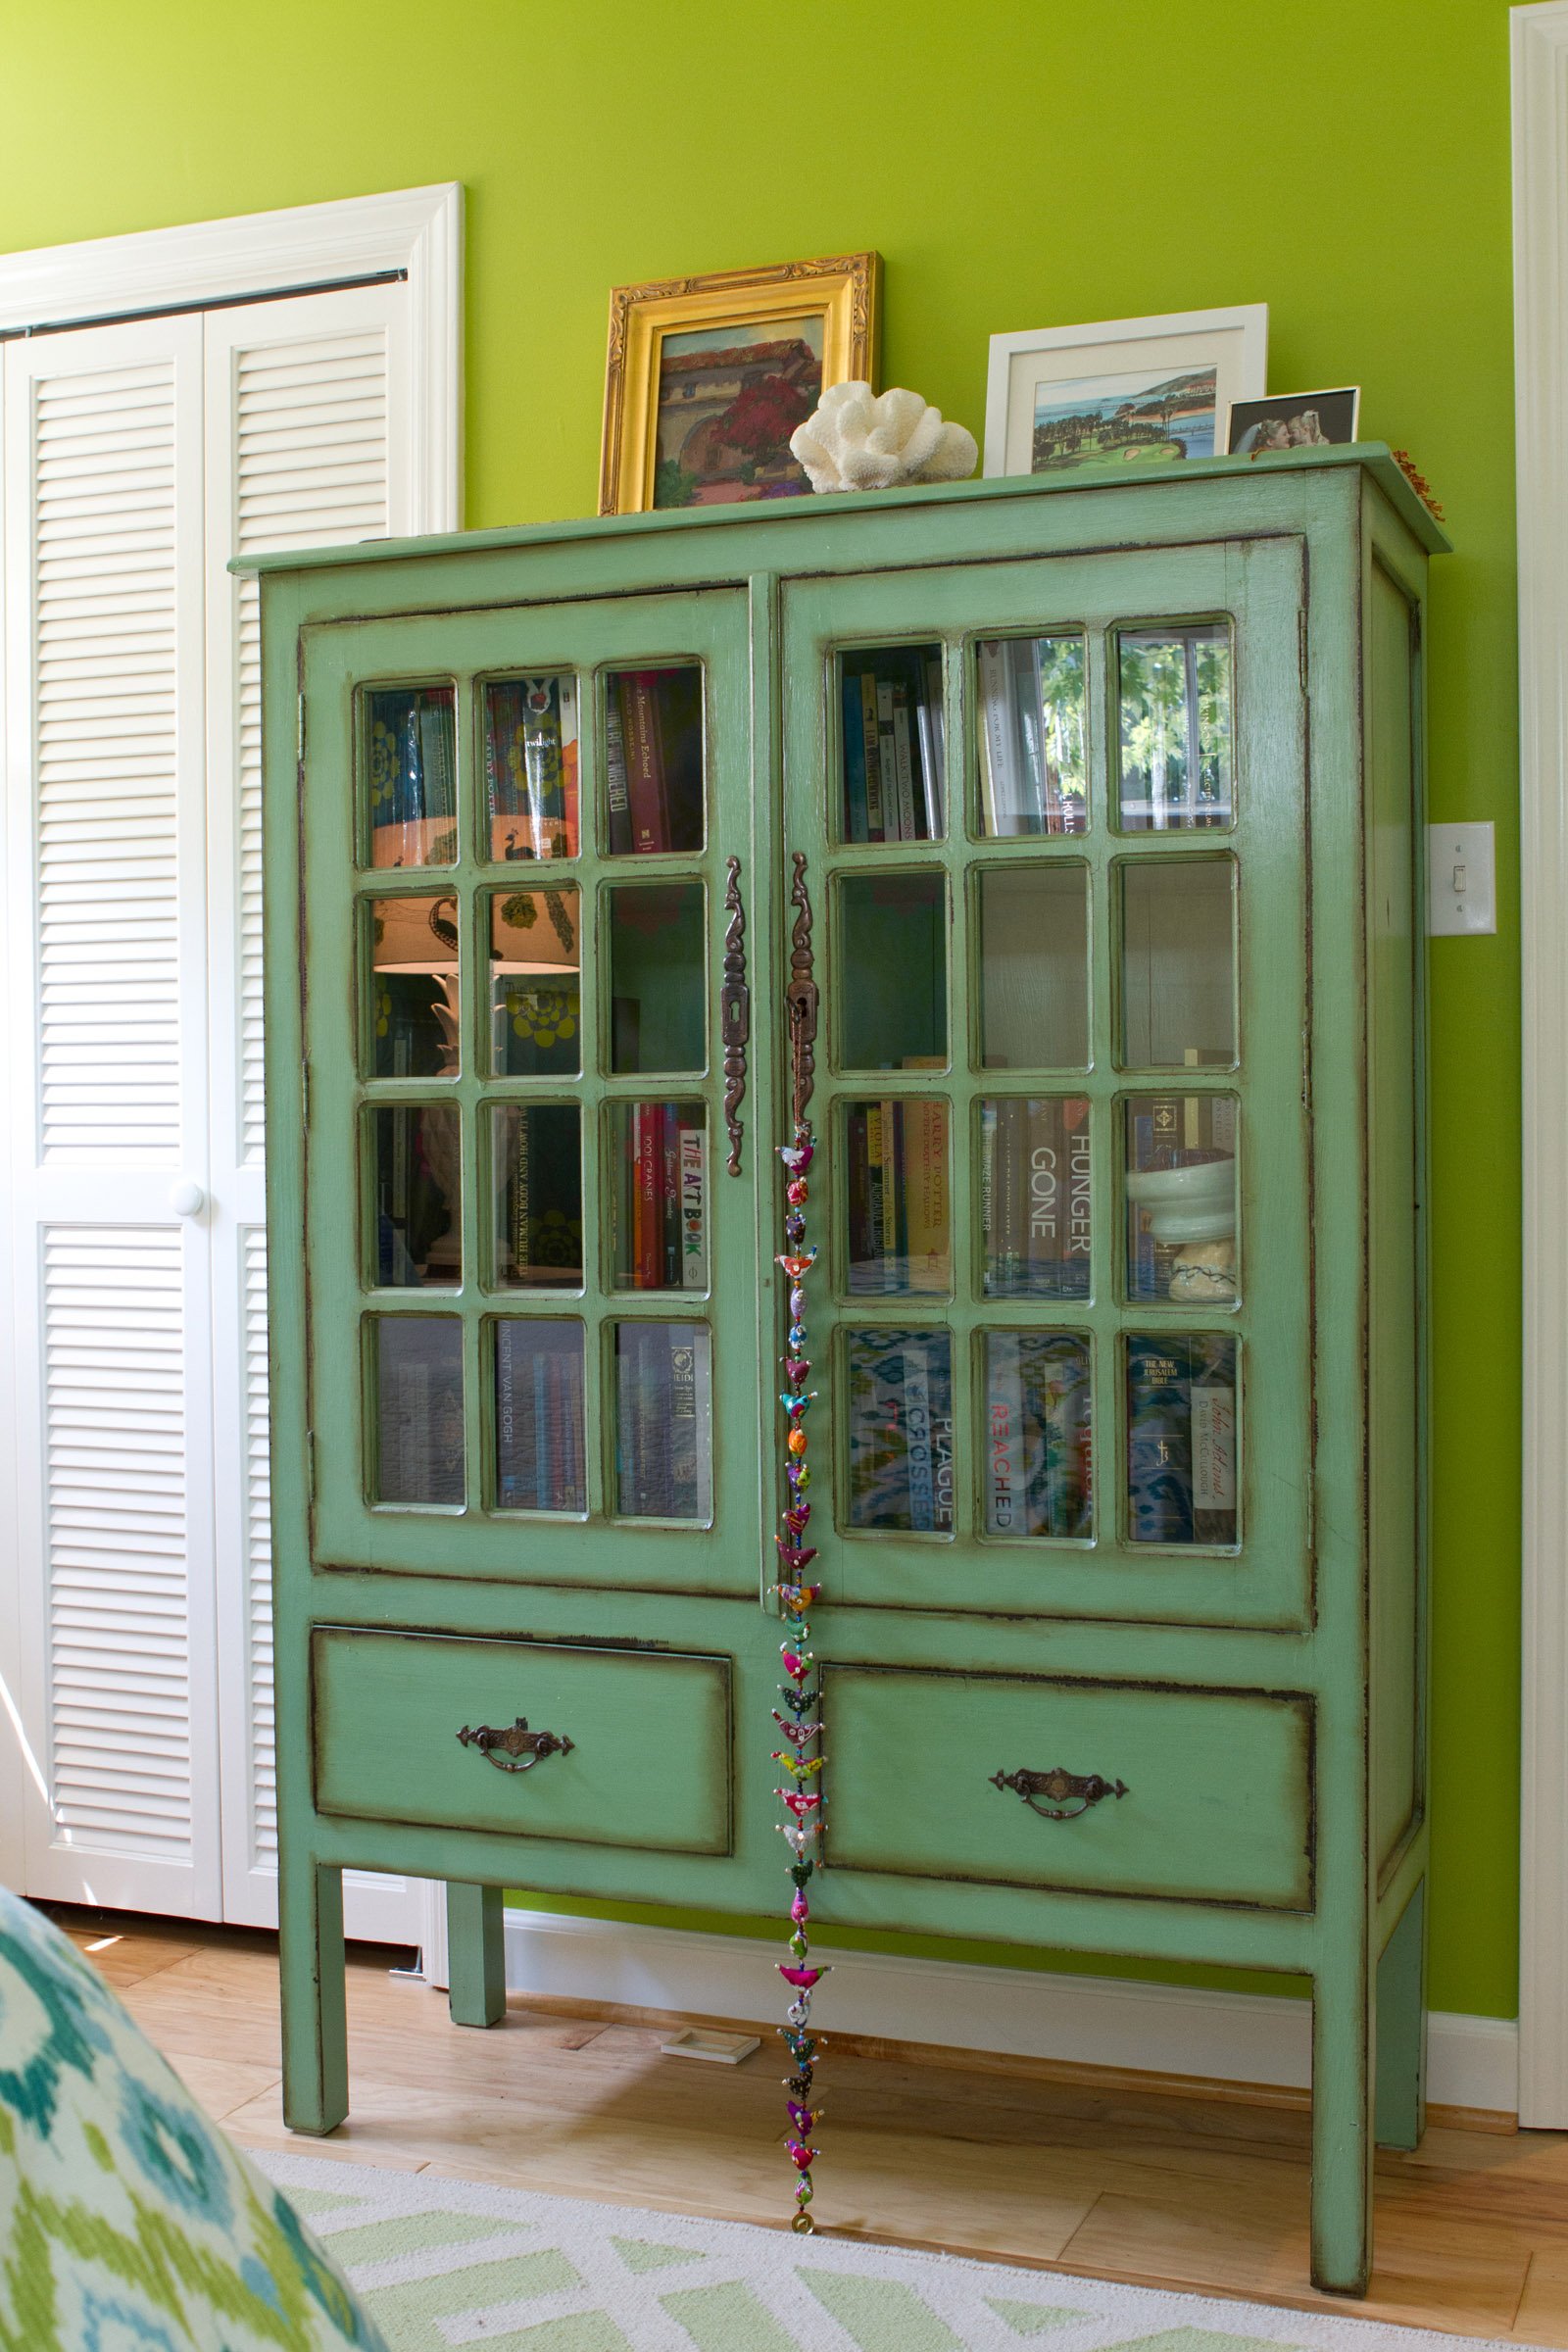 Шкафы ретро стиль. Шкаф в ретро стиле. Зеленый шкаф. Книжный шкаф в ретро стиле. Зеленый шкаф в интерьере.